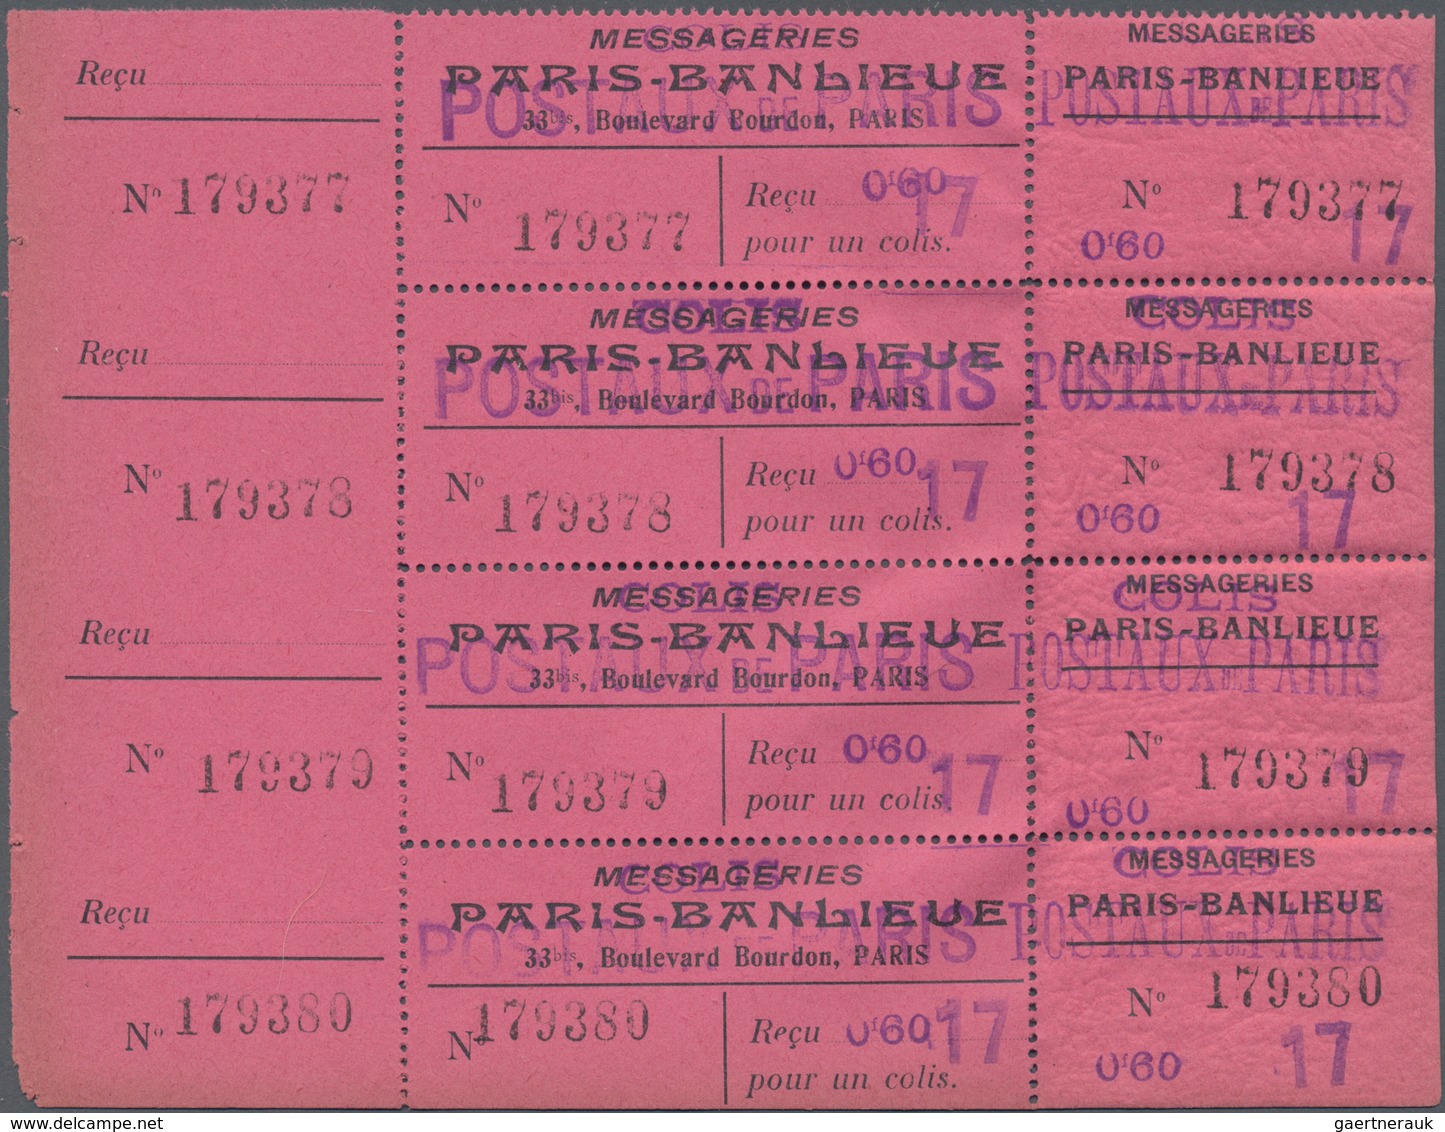 Frankreich - Postpaketmarken: 1890/1935 (ca.), COLIS POSTAUX DE PARIS POUR PARIS, enormous holding o